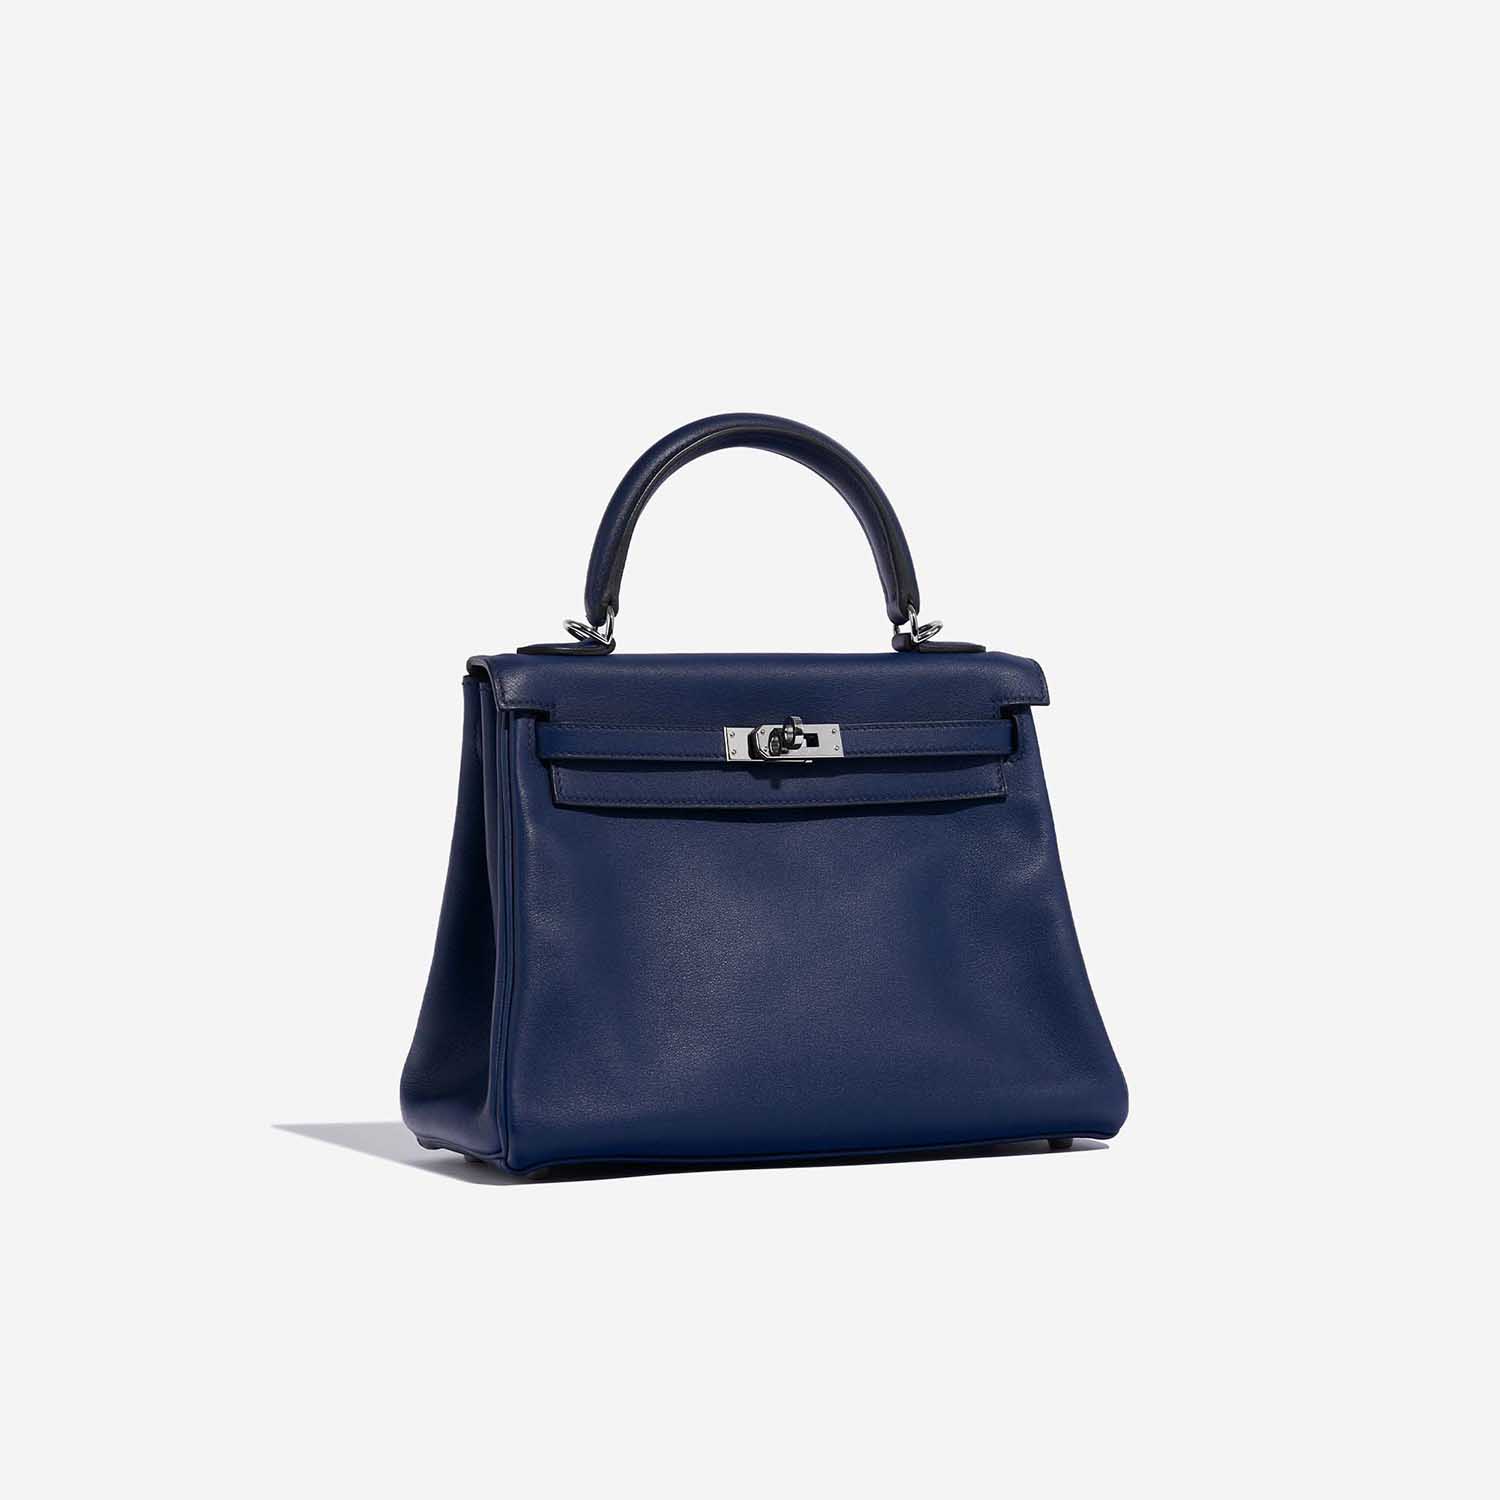 Sac Hermès d'occasion Kelly 25 Swift Bleu Saphir Bleu Côté Face | Vendez votre sac de créateur sur Saclab.com